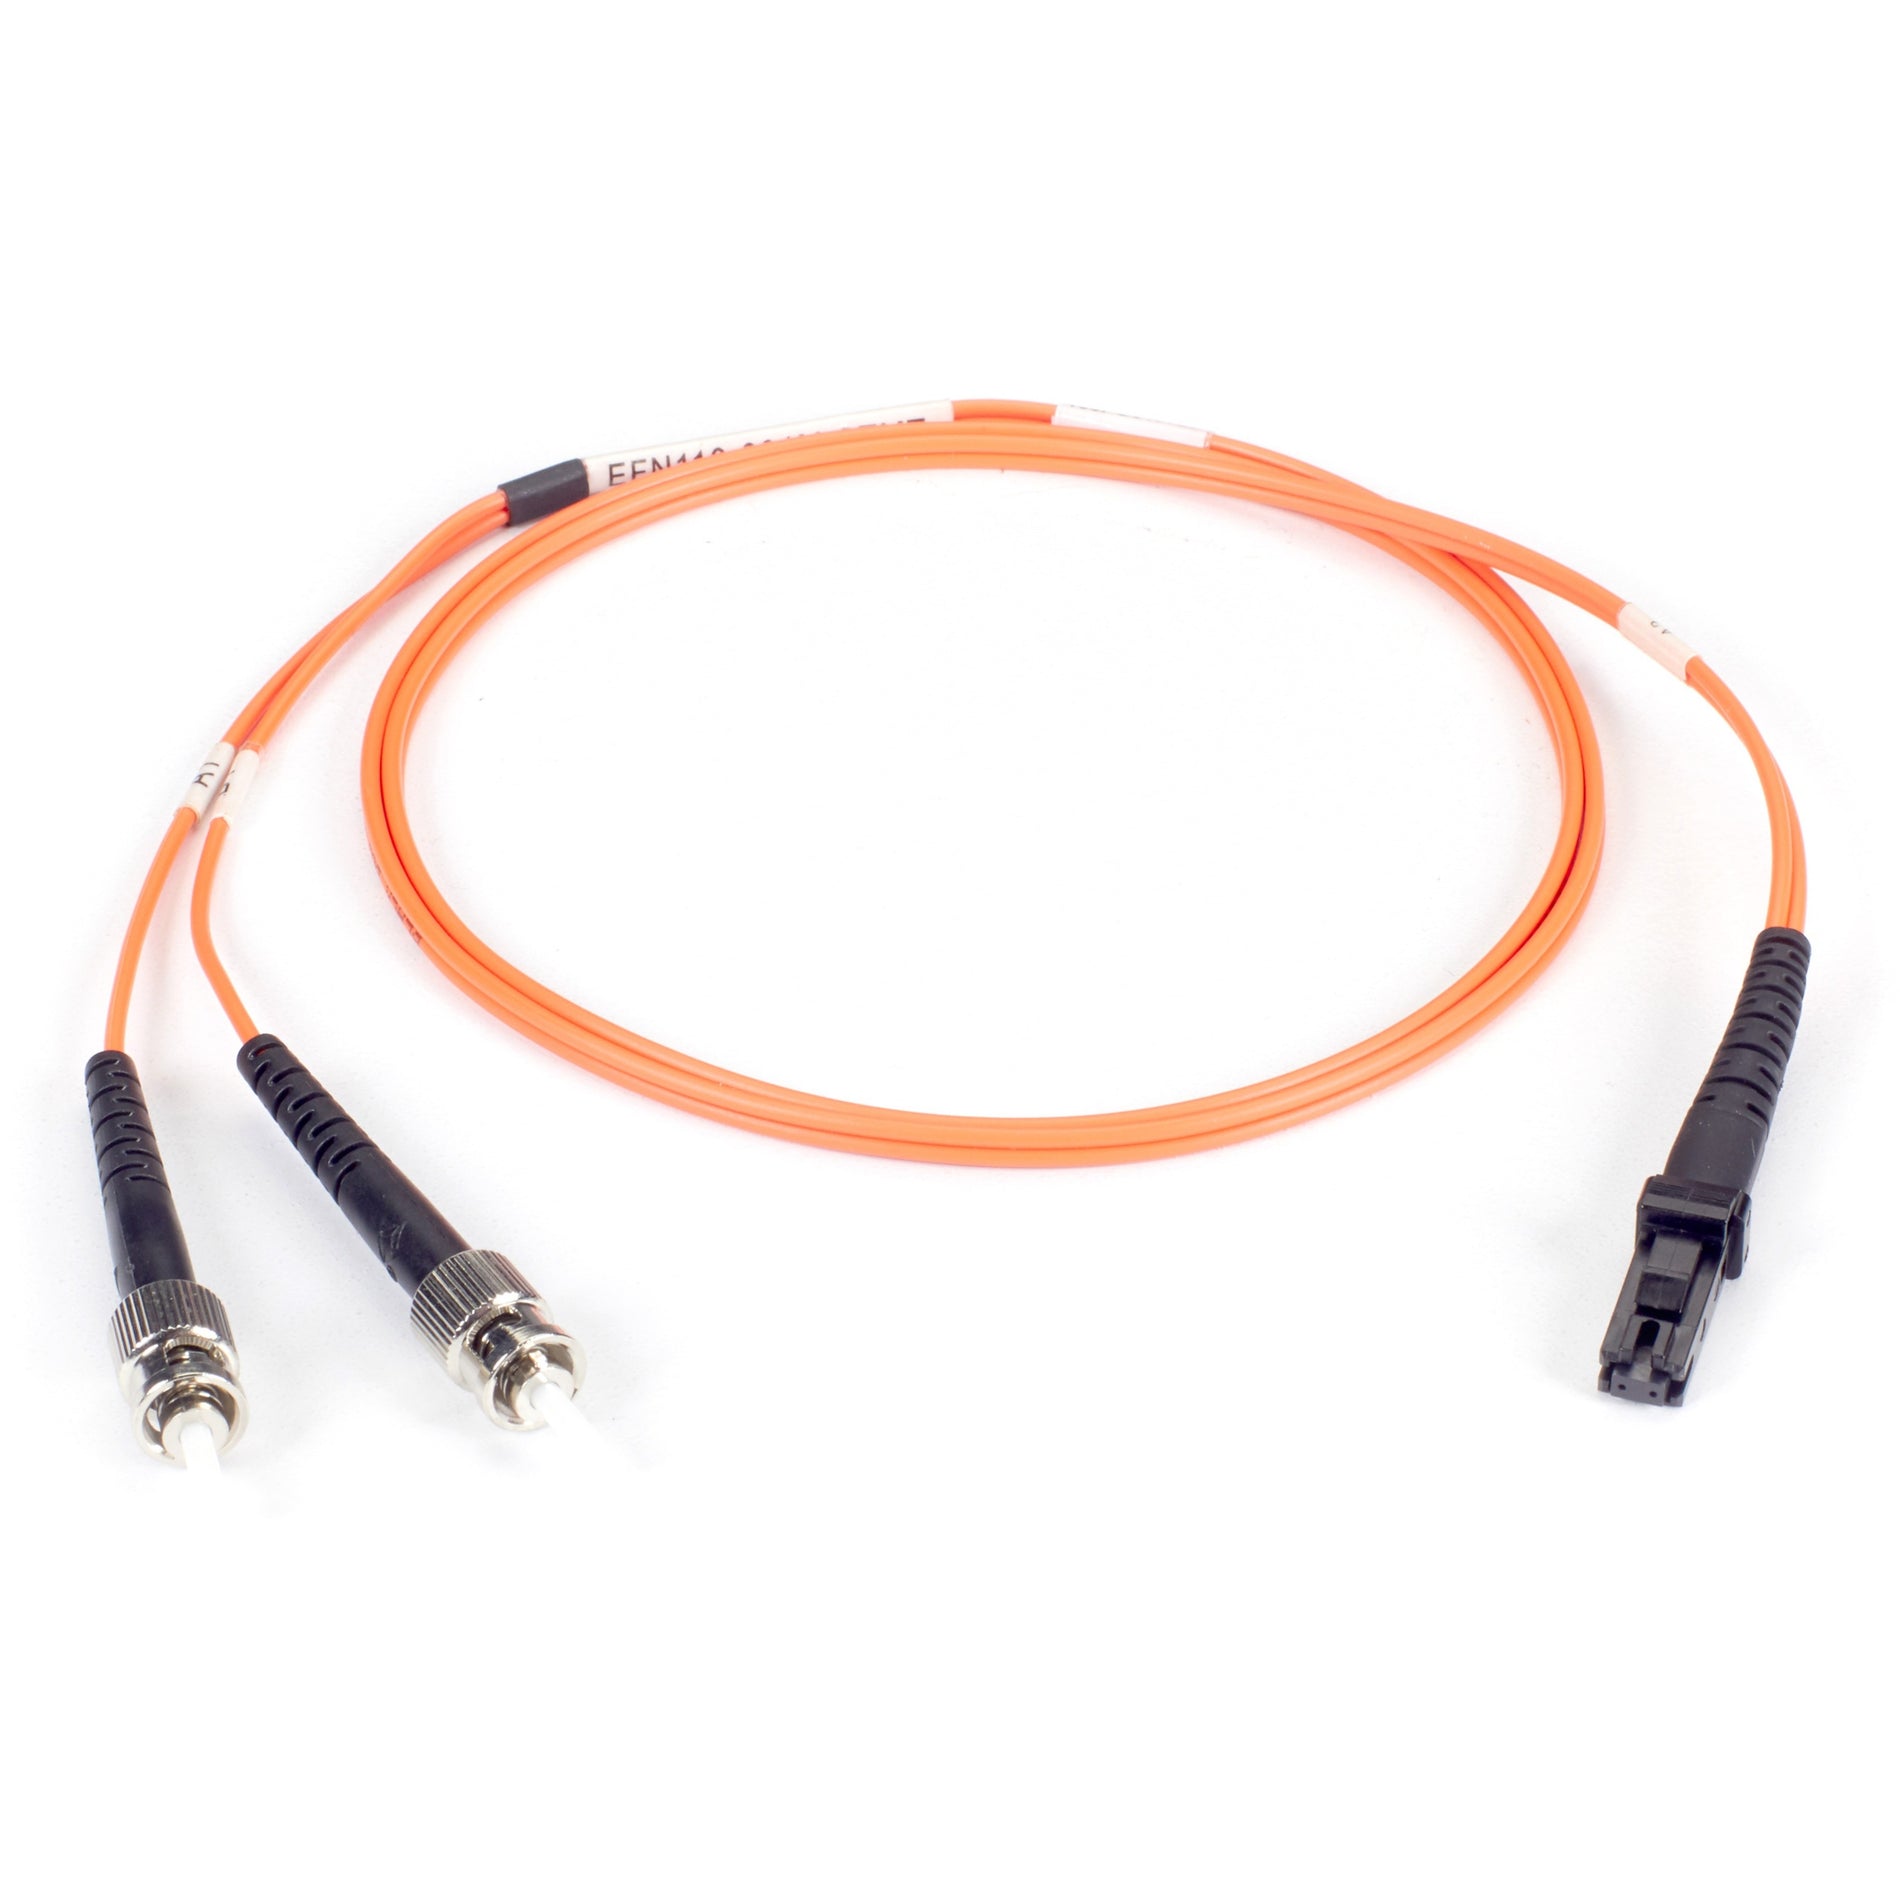 Black Box EFN110-010M-STLC Fiber Optic Duplex Patch Network Cable, Multi-mode, 32.80 ft, ST to LC Connectors, Orange Jacket